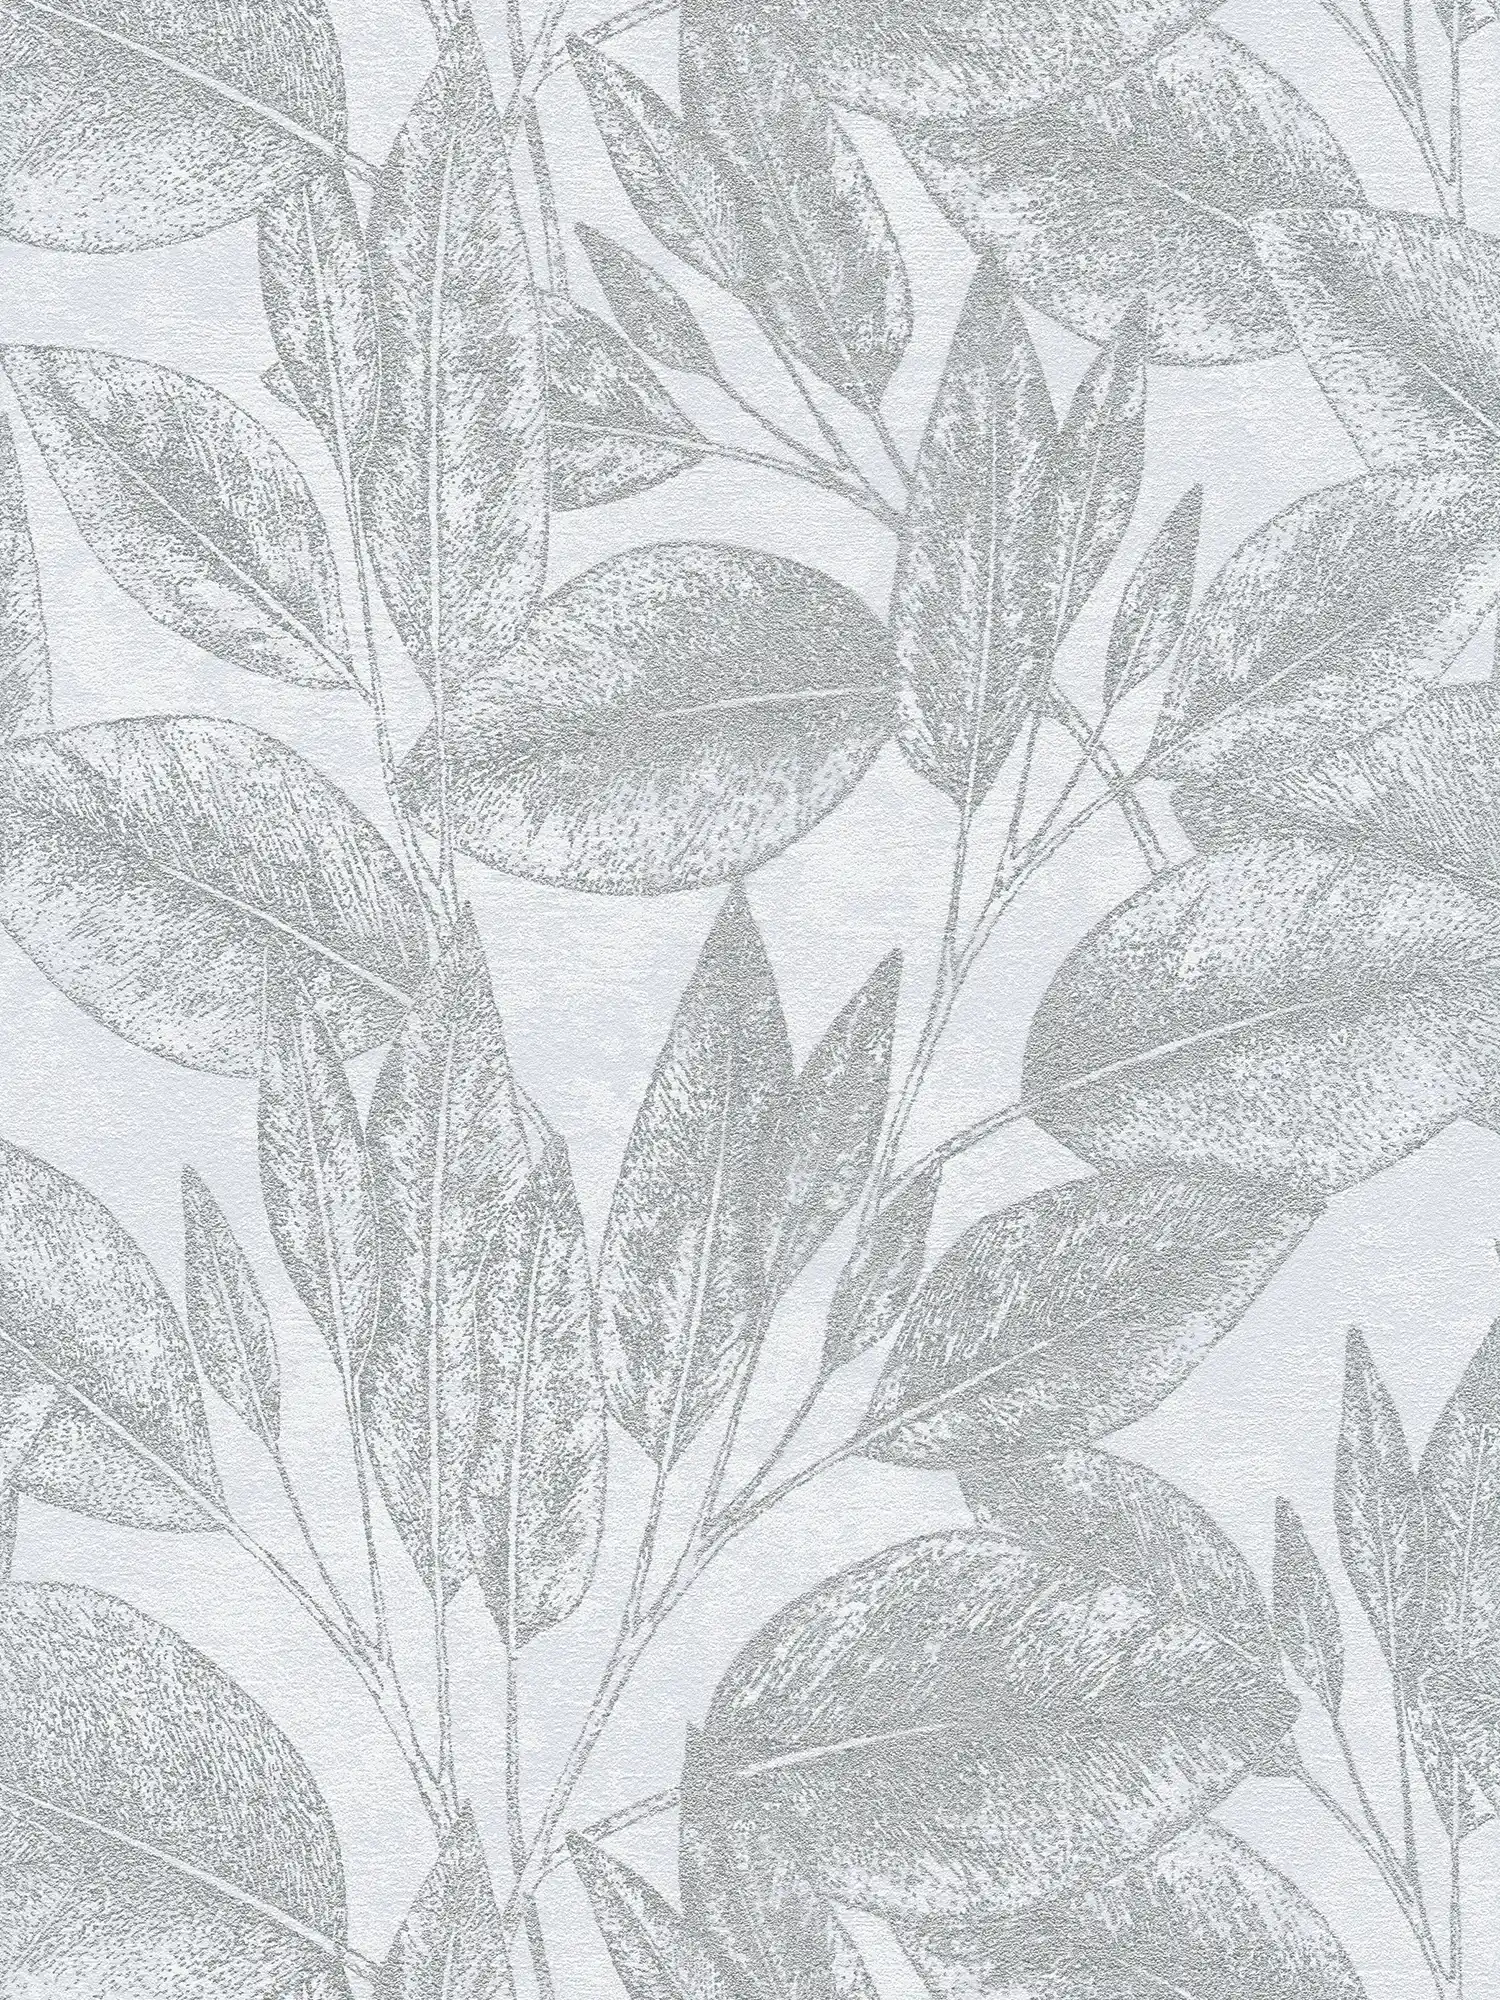 Papier peint vintage à motifs de feuilles - gris, métallique
